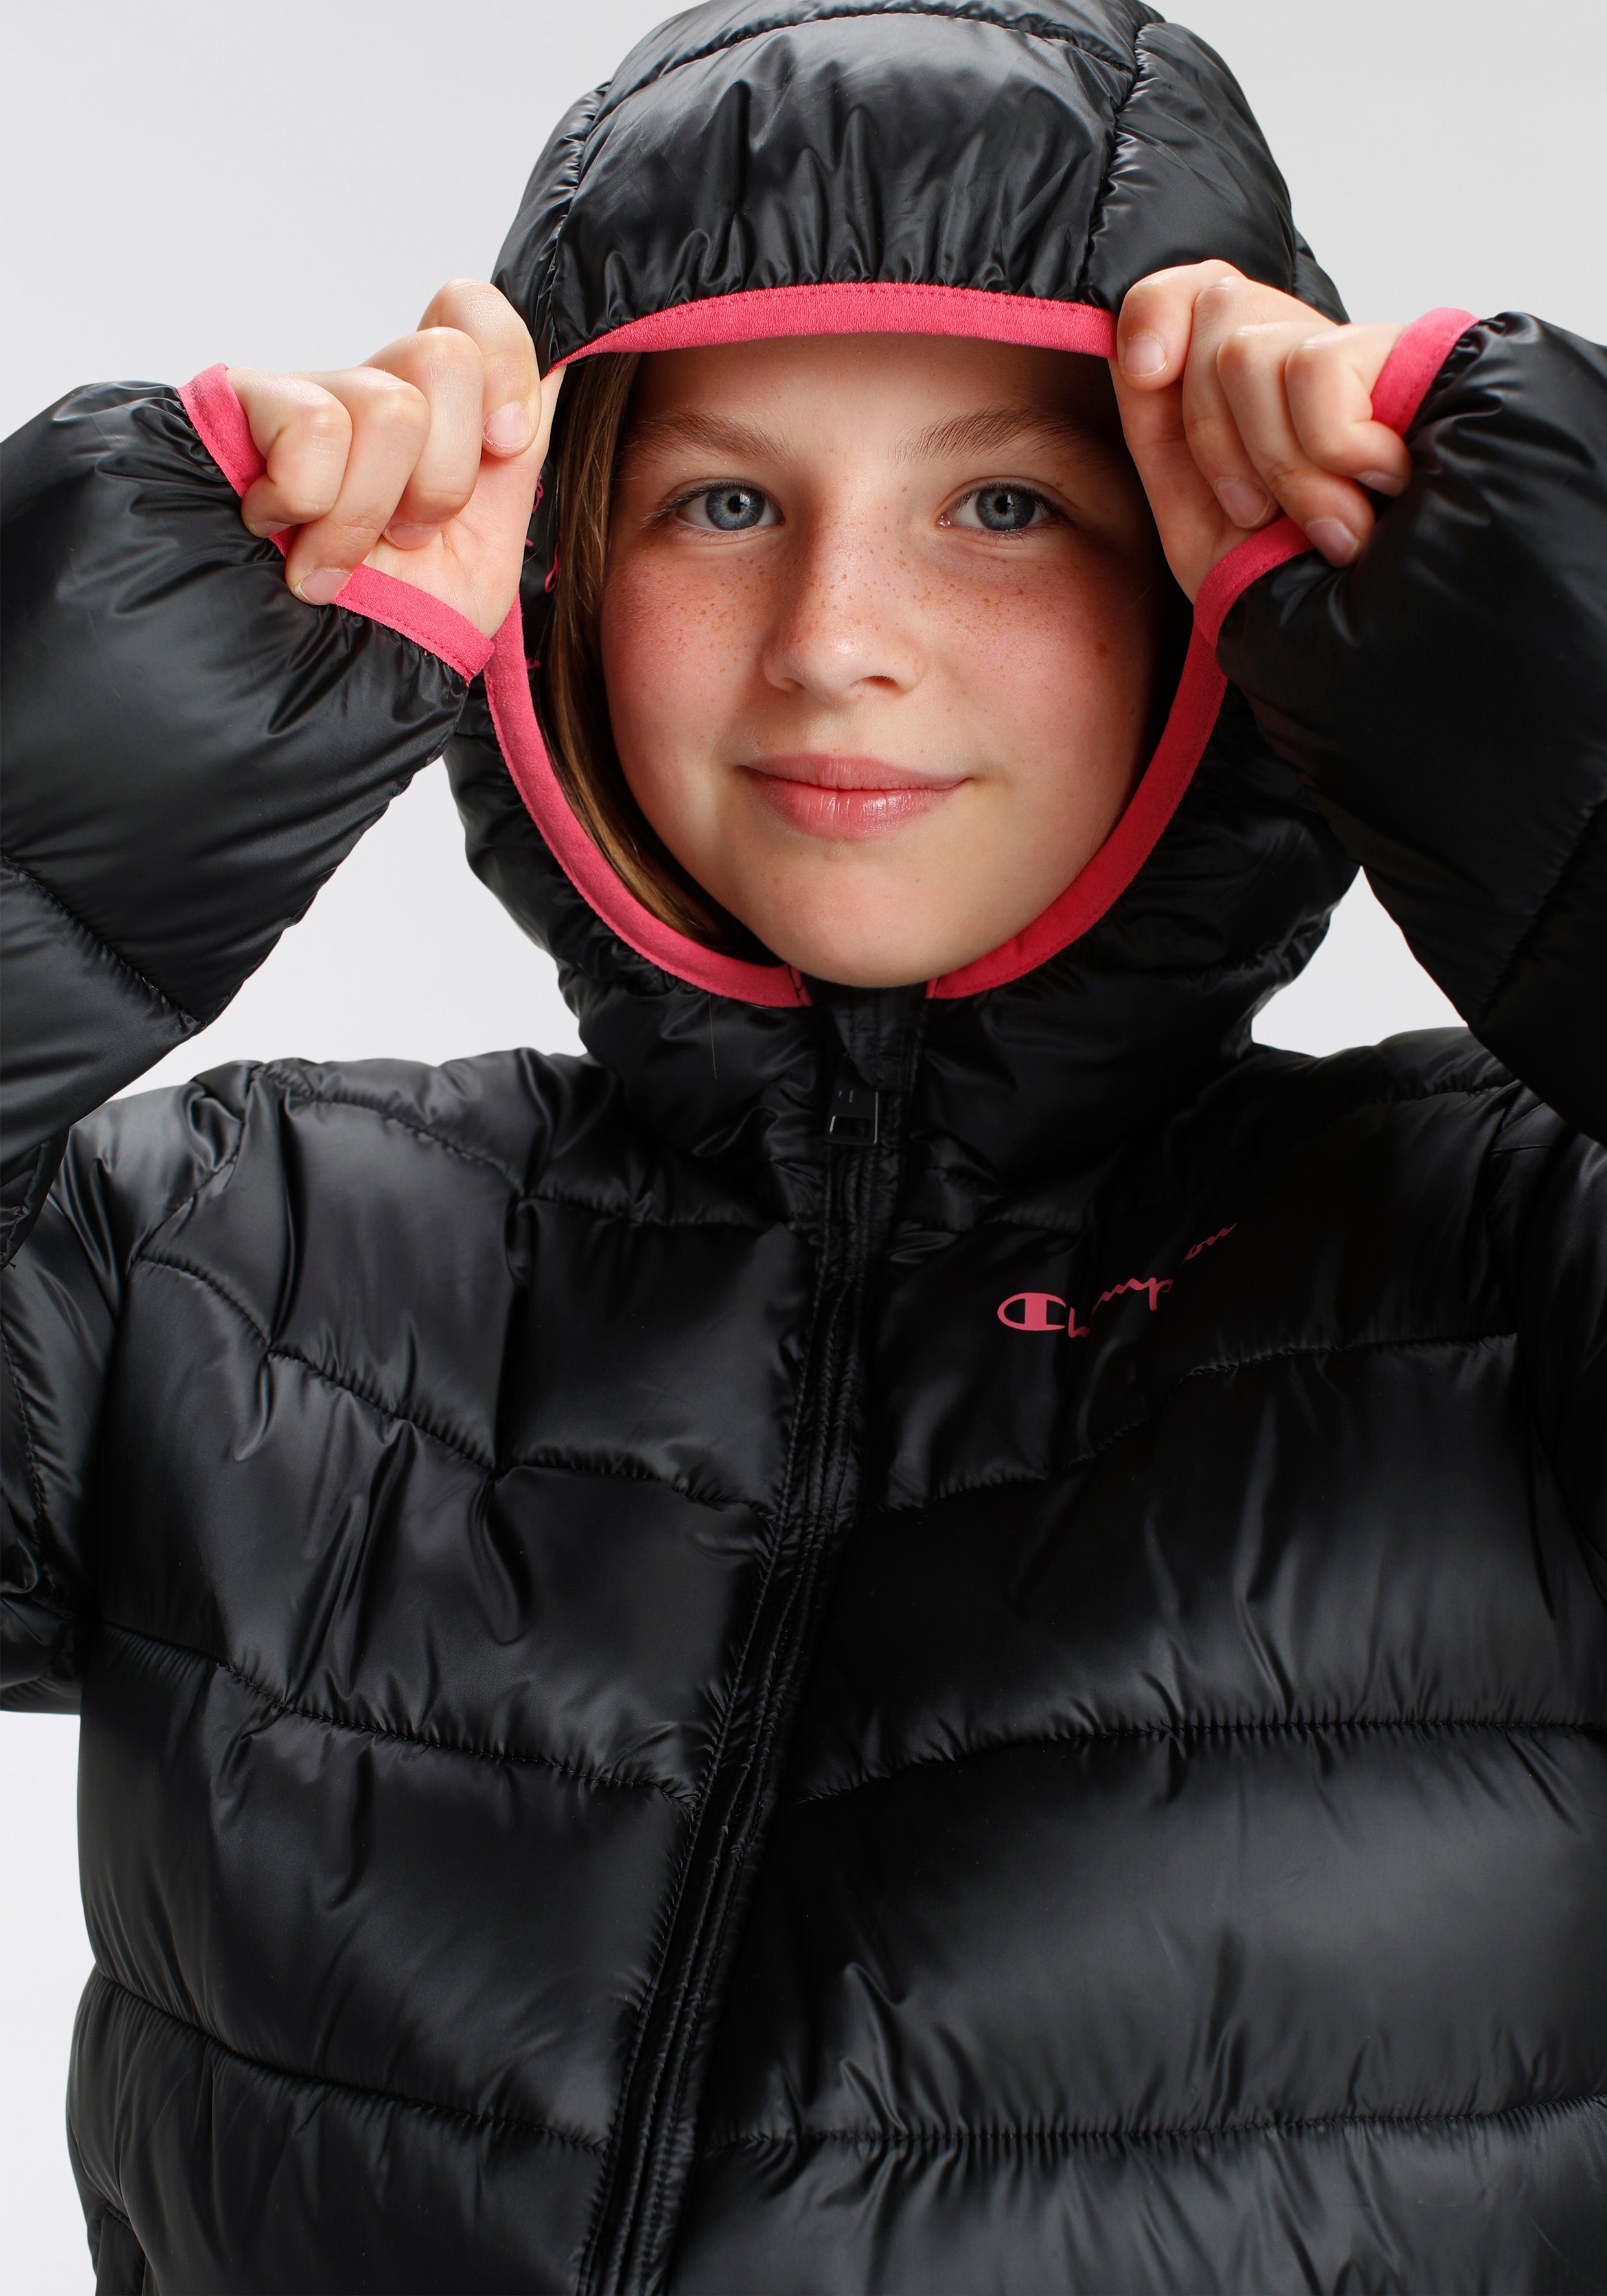 Kinder für Hooded Jacket schwarz-pink Outdoor Steppjacke - Champion